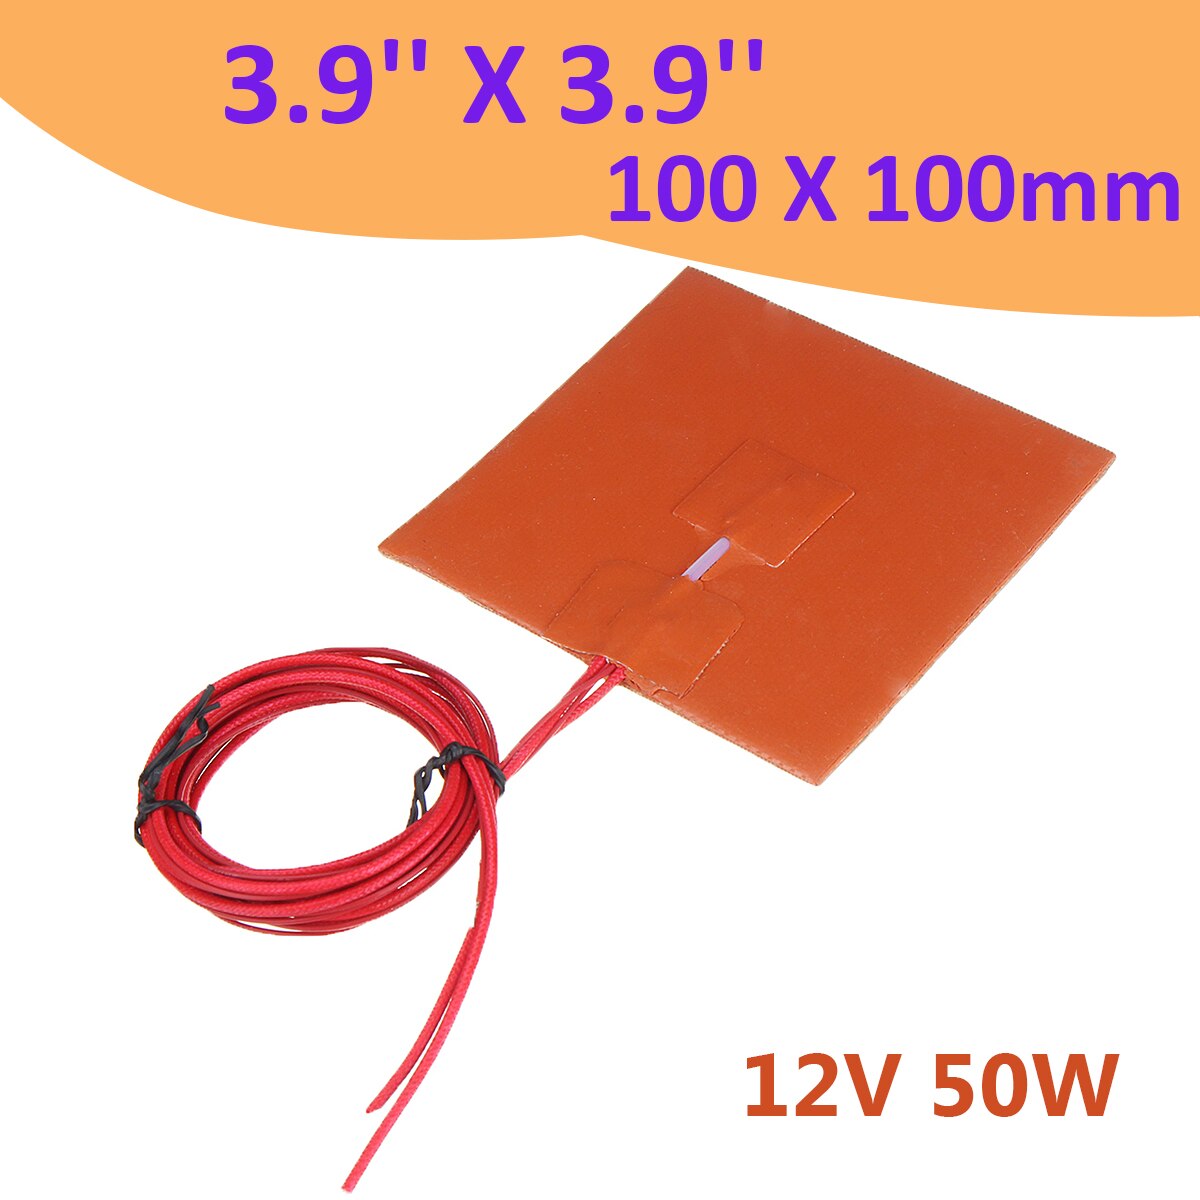 2.88Ω 12V 50W Silicone Heater Verwarming Pad W/ Thermistor Voor 3d Printer Onderdelen 100X100 Mm heater